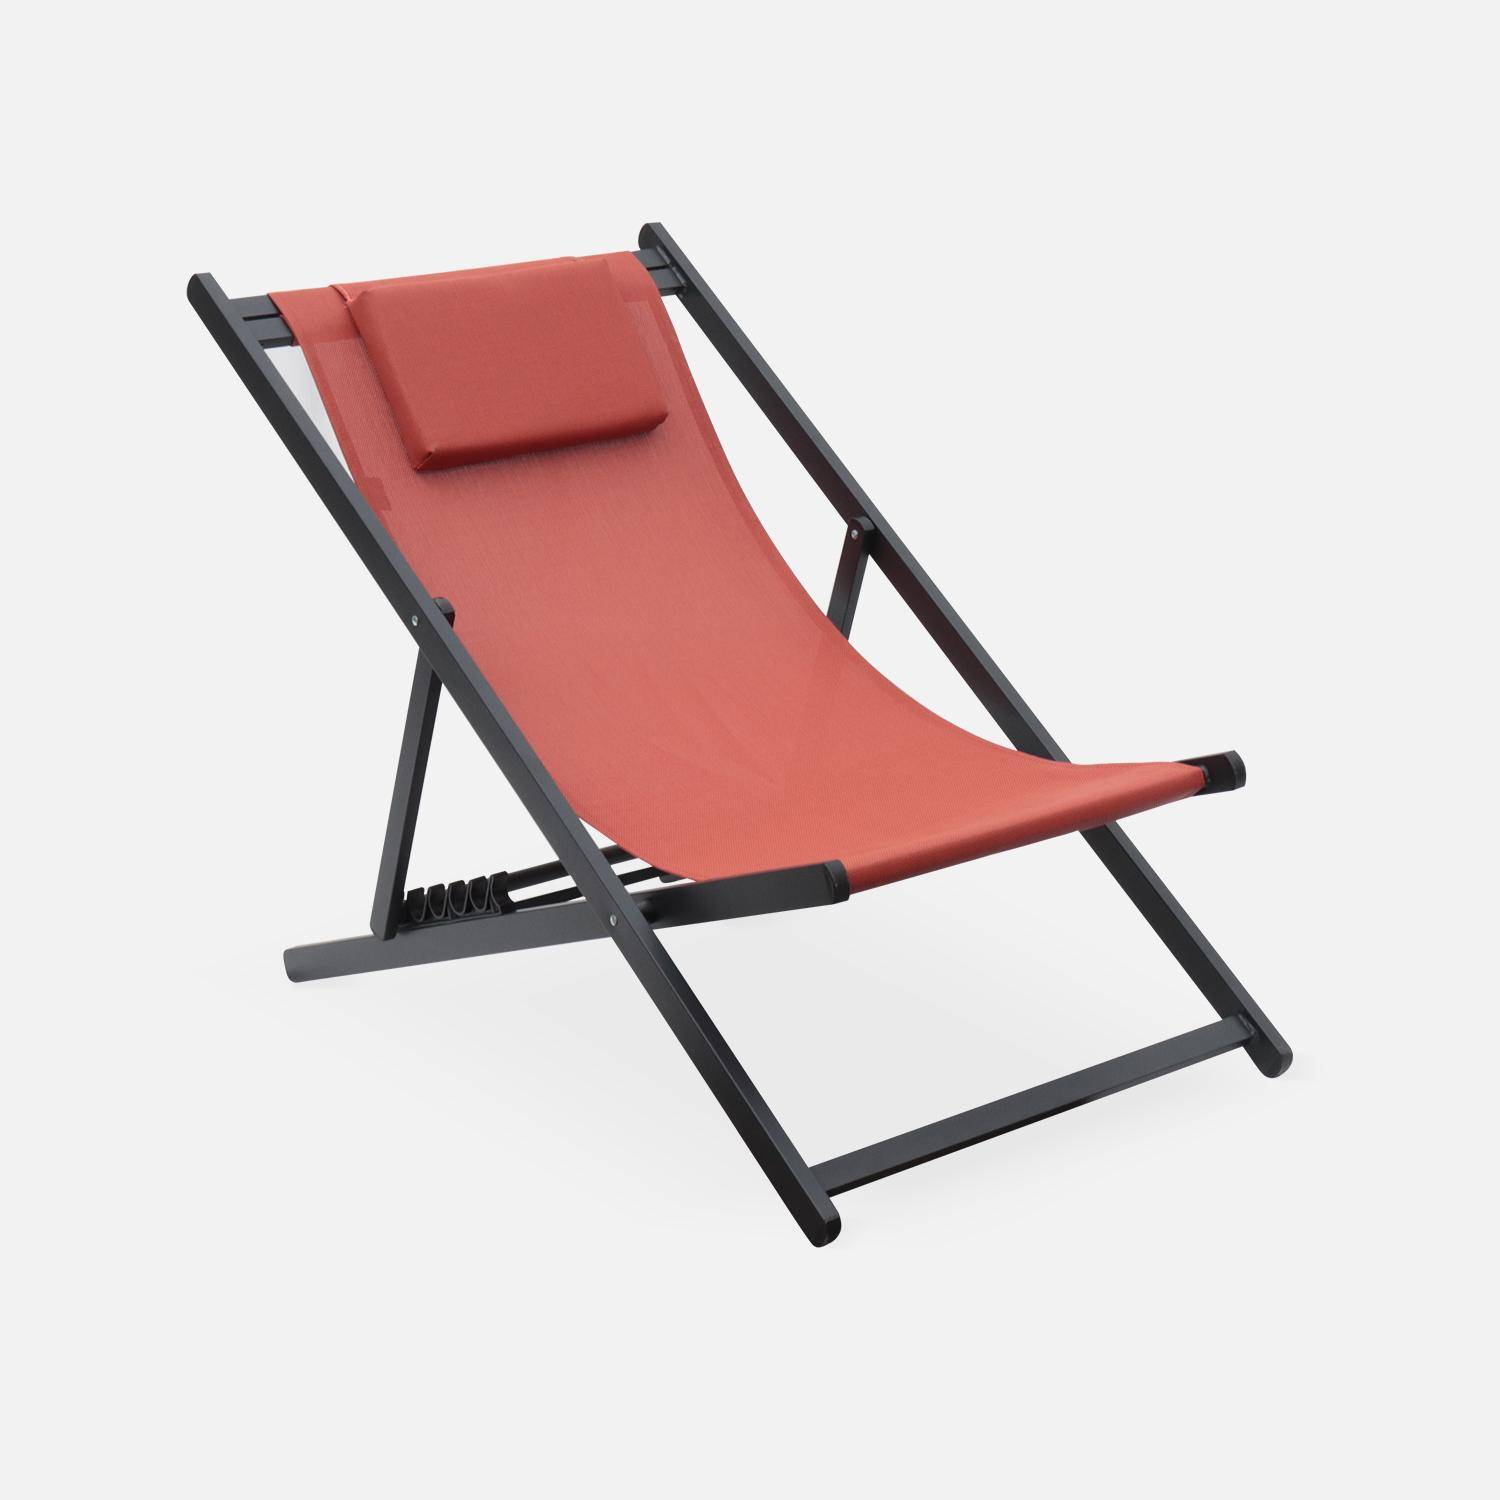 Juego de 2 sillas para tomar sol - Gaia terracota - Aluminio antracita y textileno terracota con reposacabezas.,sweeek,Photo3